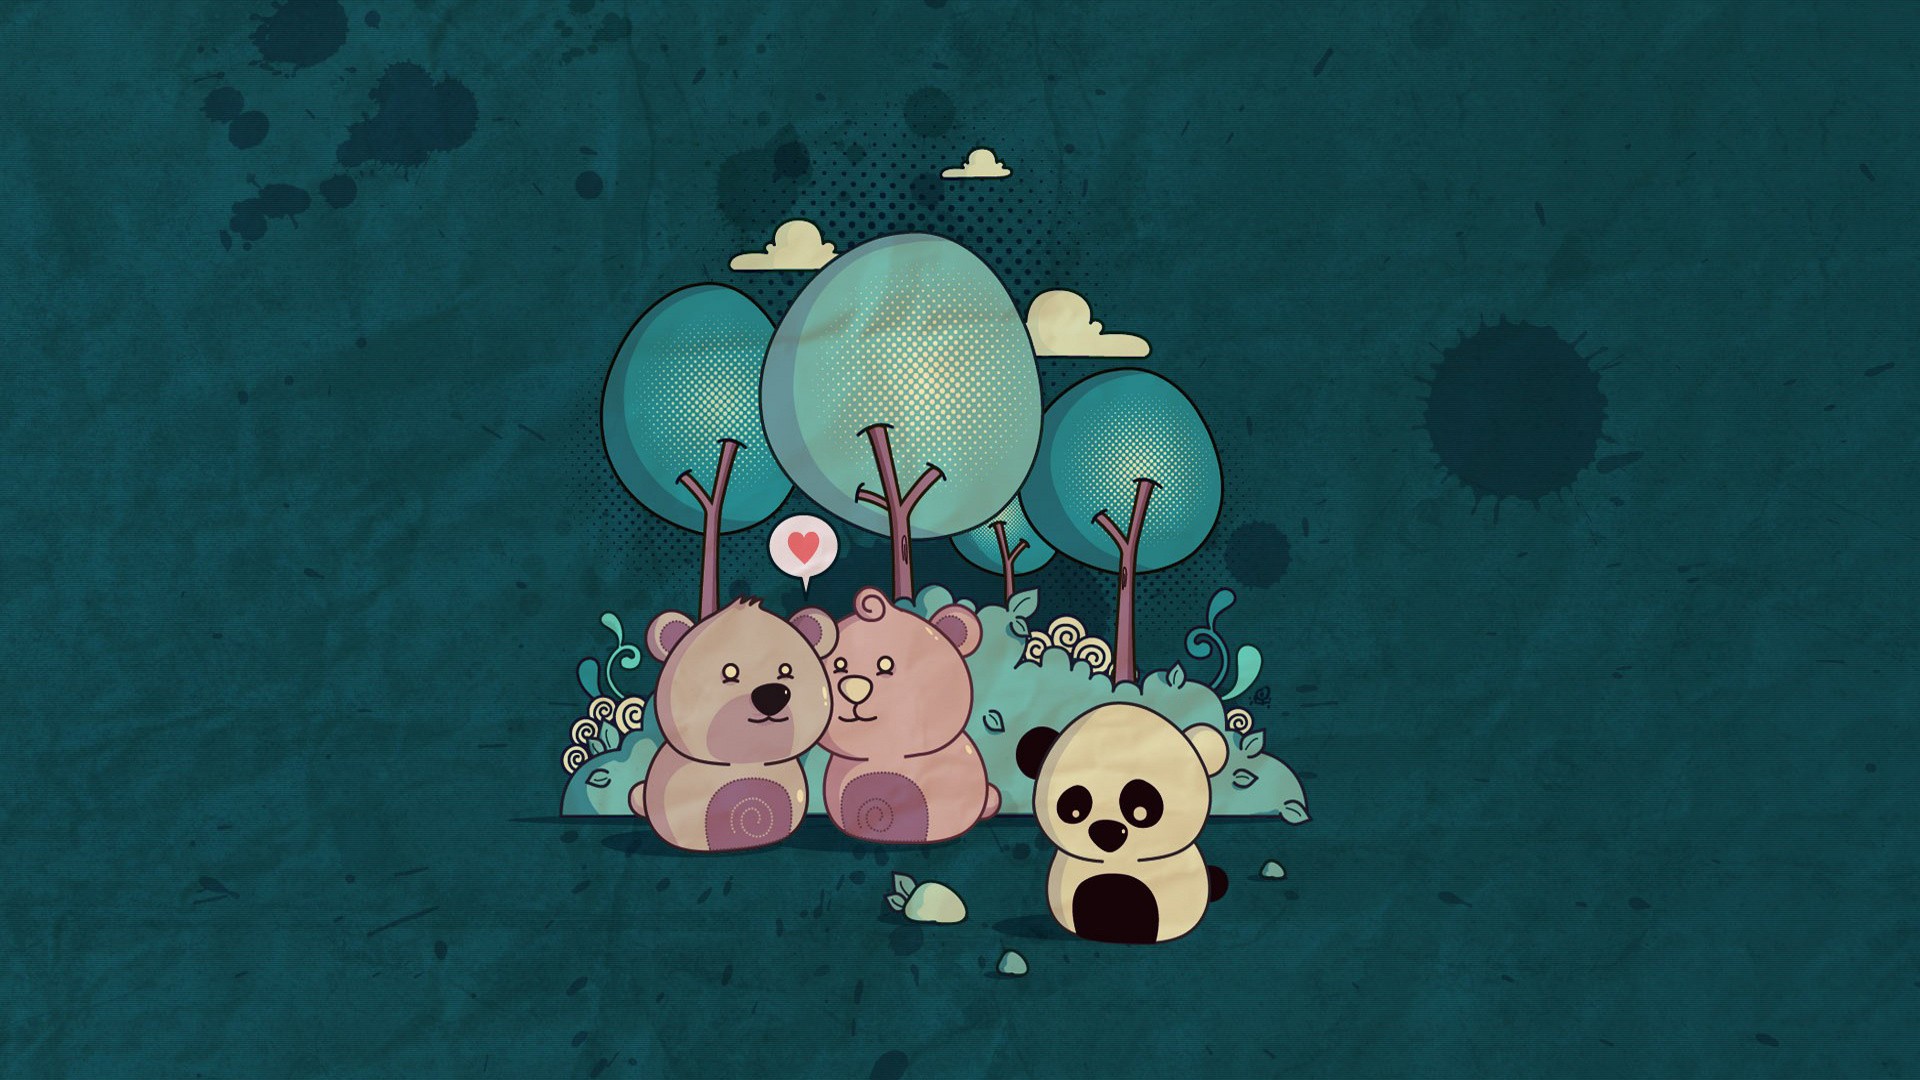 love, sad, panda bears, drawings, bears wallpaper